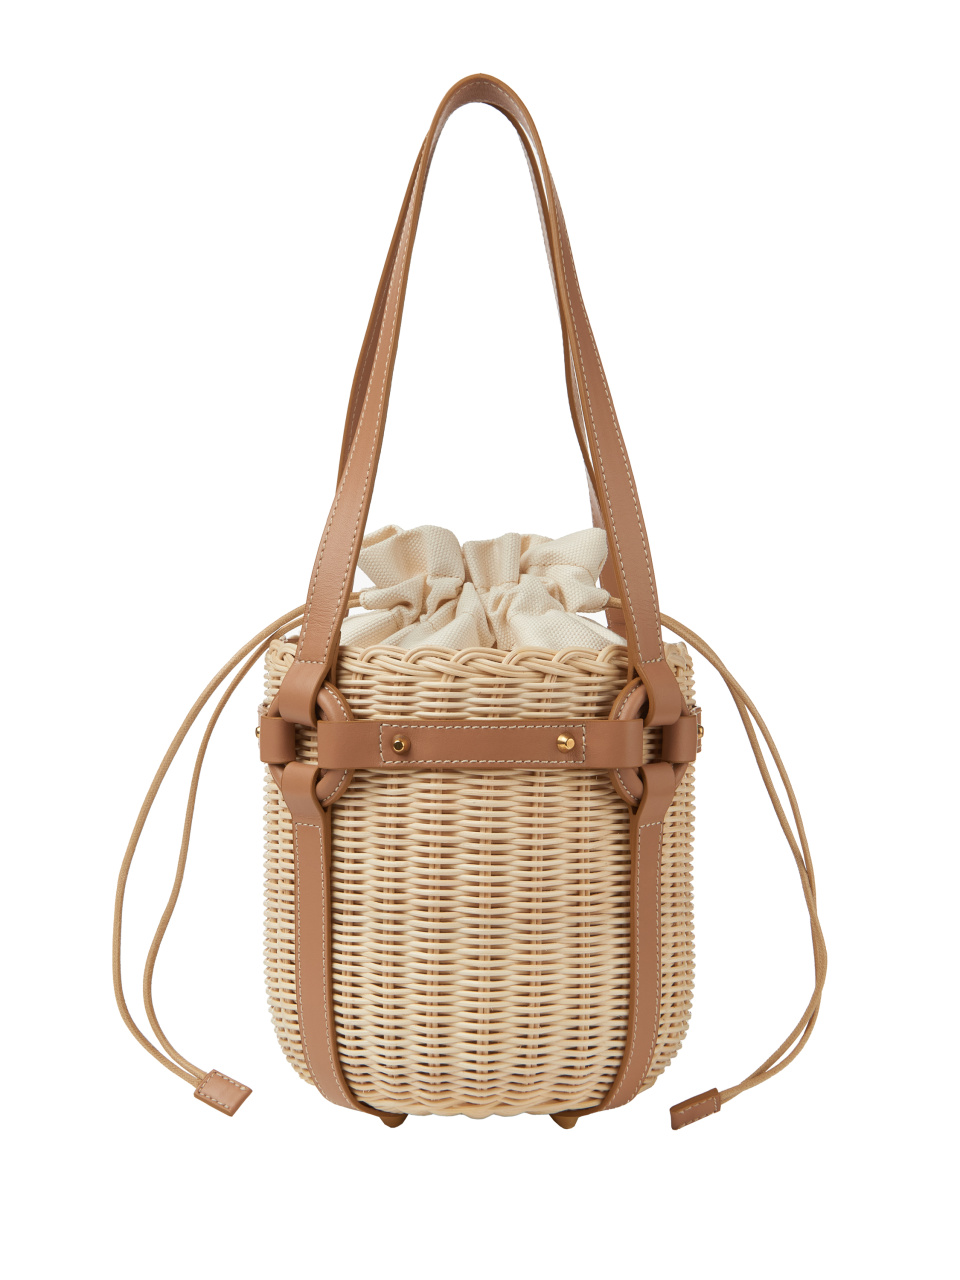 Плетеная сумка-ведро с коричневой кожаной отделкой, 1